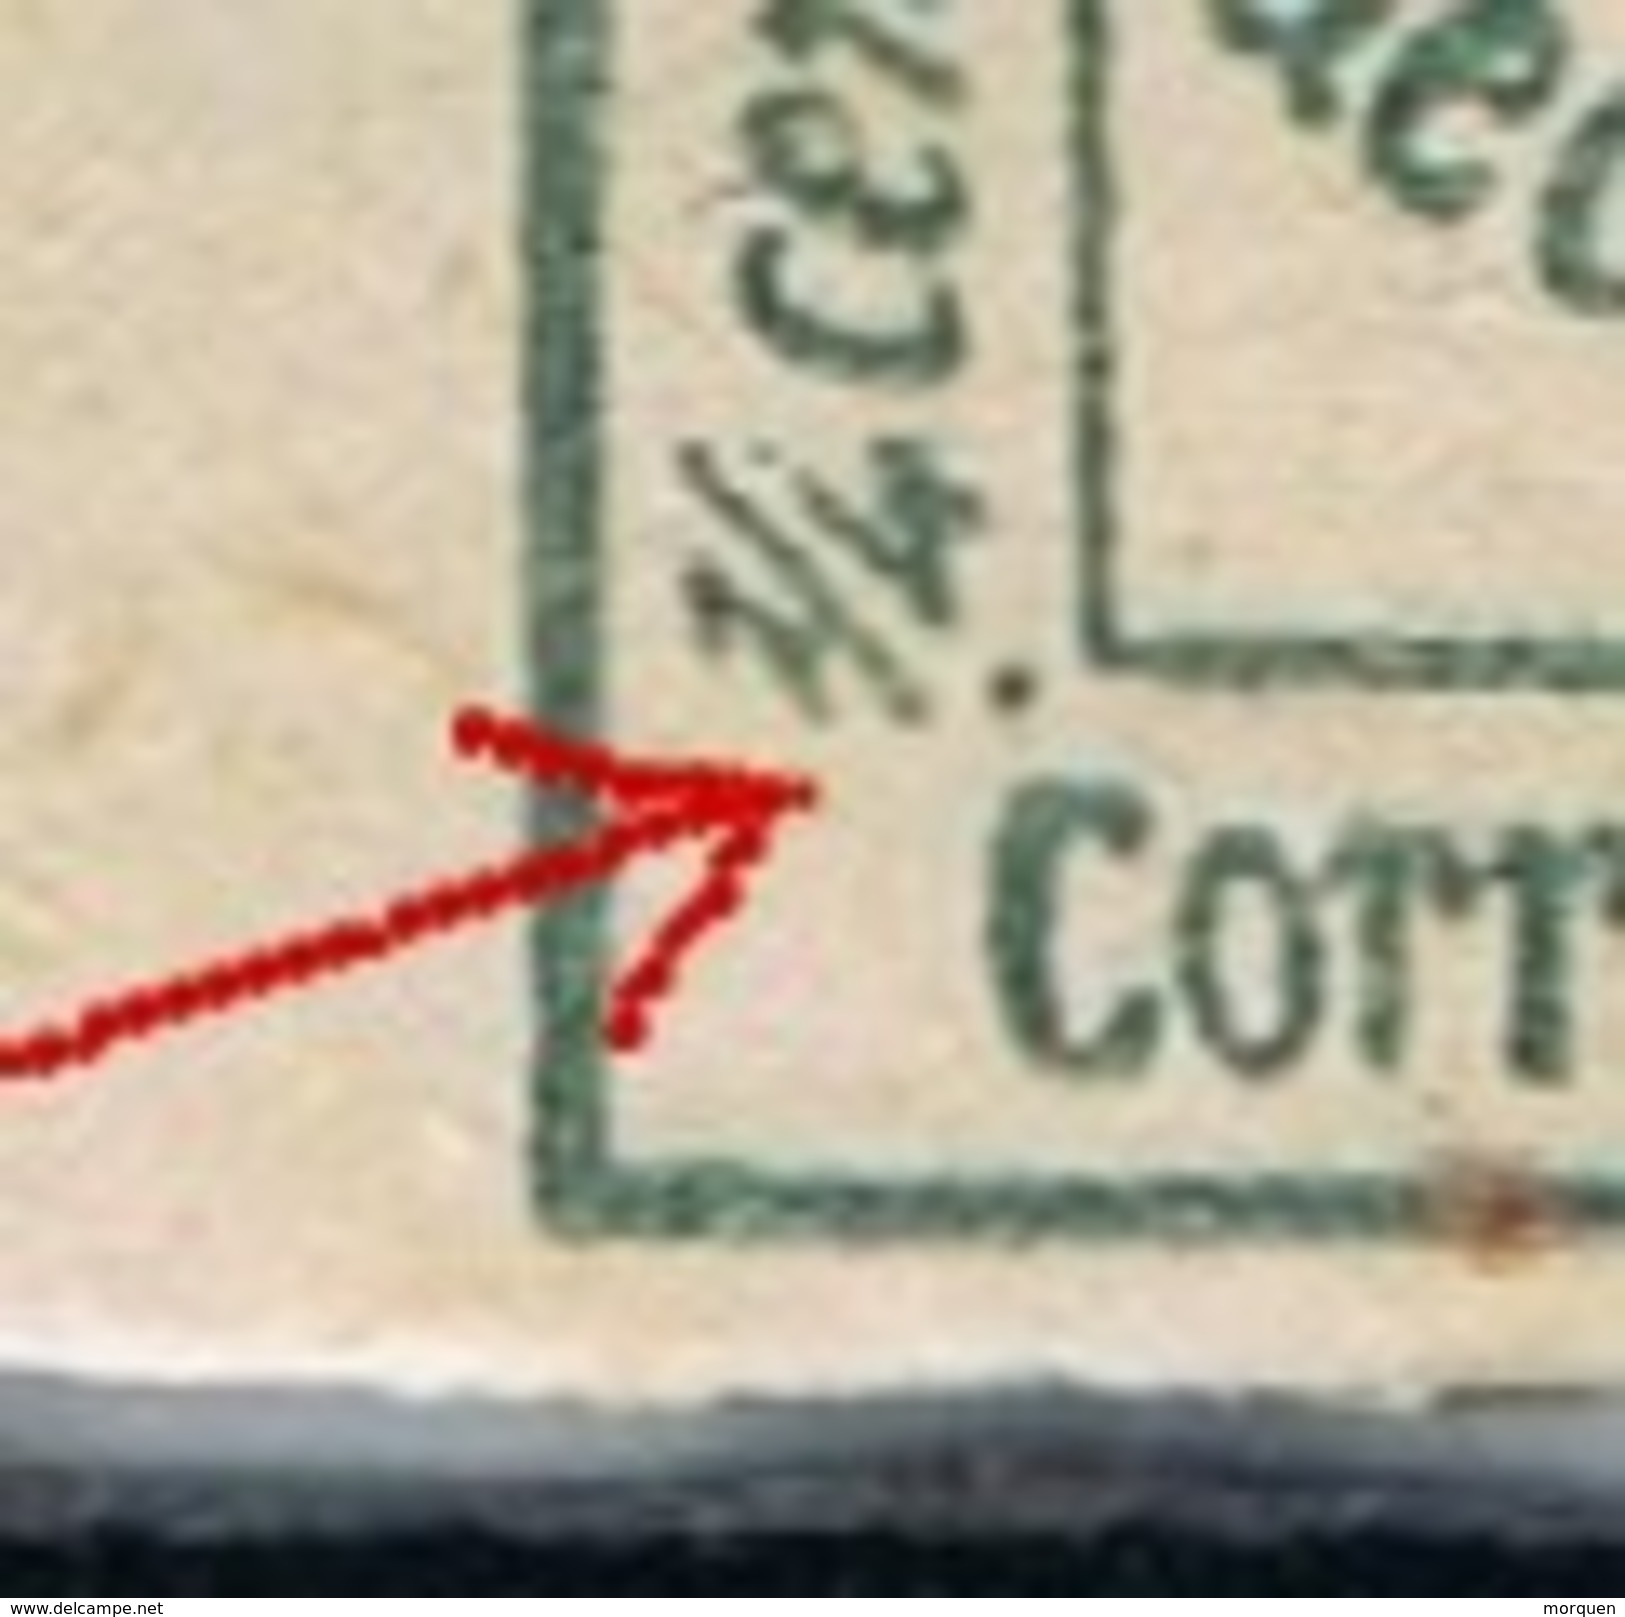 Sellos 1 Cuartillo 1877, Variedad Impresion, Num  173 * - Unused Stamps